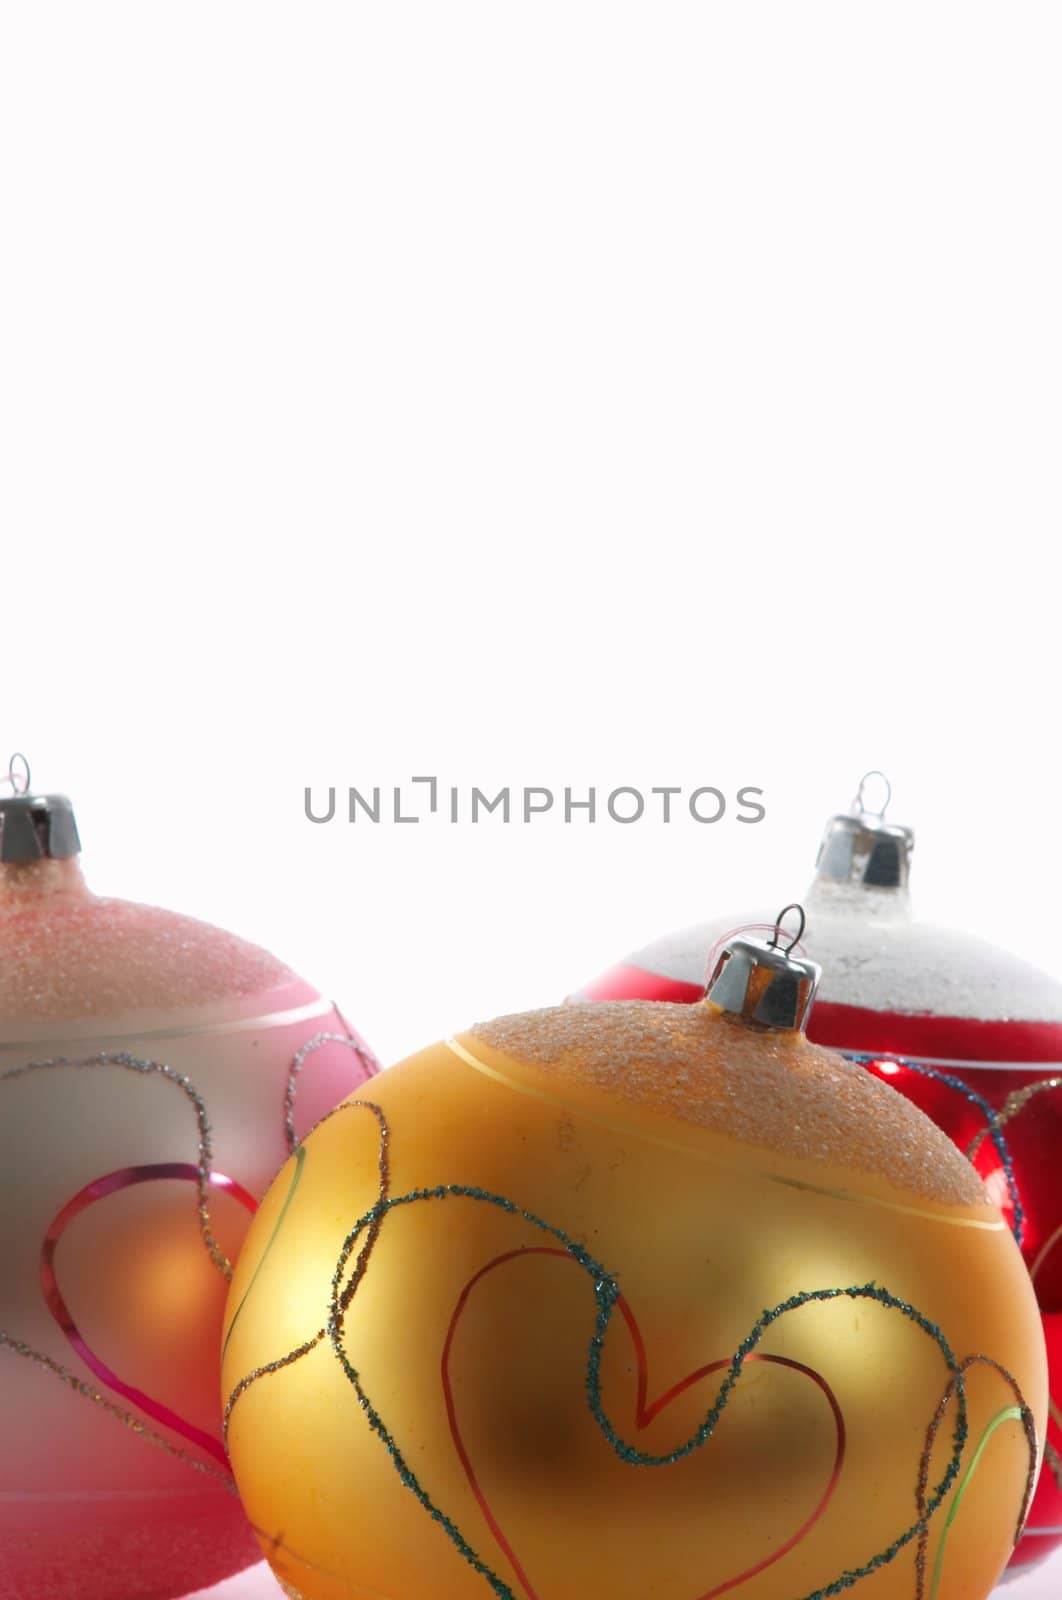 An image of christmas tree balls